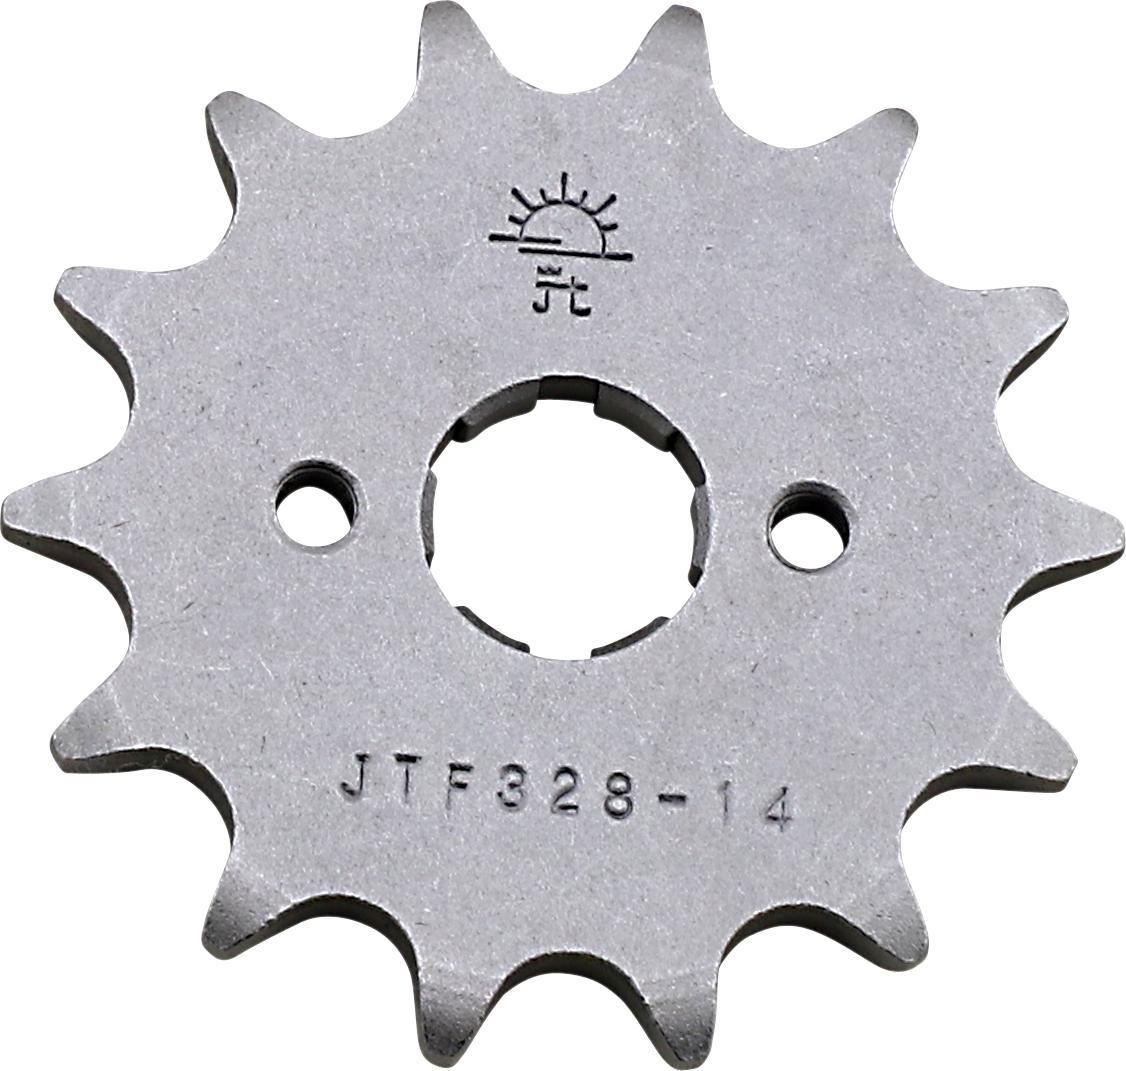 3EFO-JT-SPROCKET-JTF328-14 Counter Shaft Sprocket - 14-Tooth